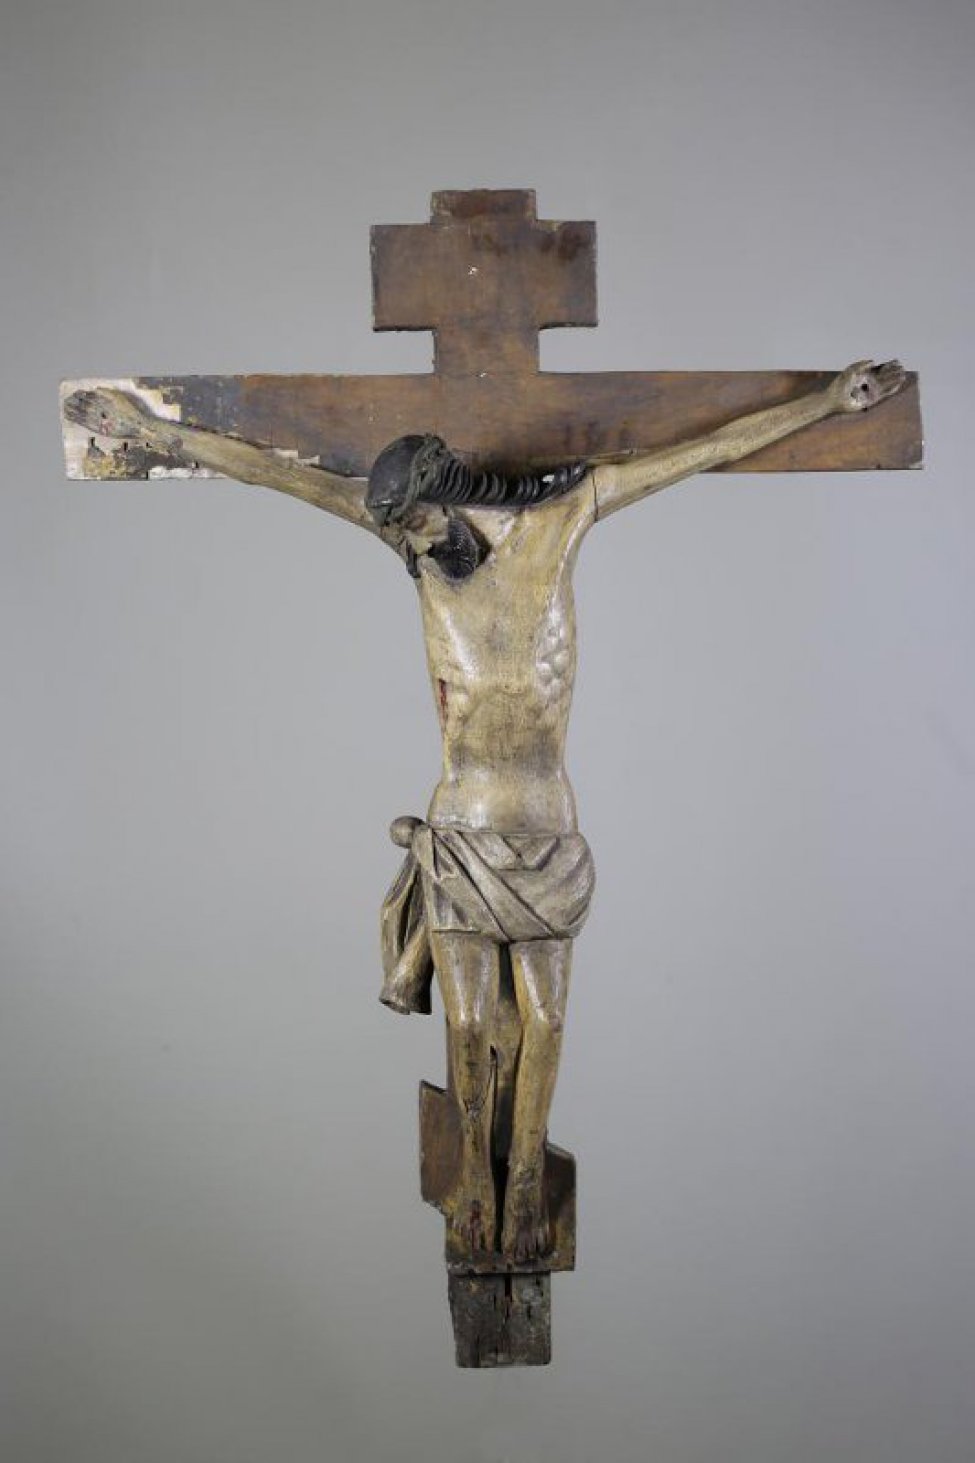 Фигура Распятого Христа вырезана в малоокруглых почти не детализированных поверхностях. Чресленник лежит изогнутыми плоскими складками, конец его свешивается завиваясь. Крест - коричневый, восьмиконечный.